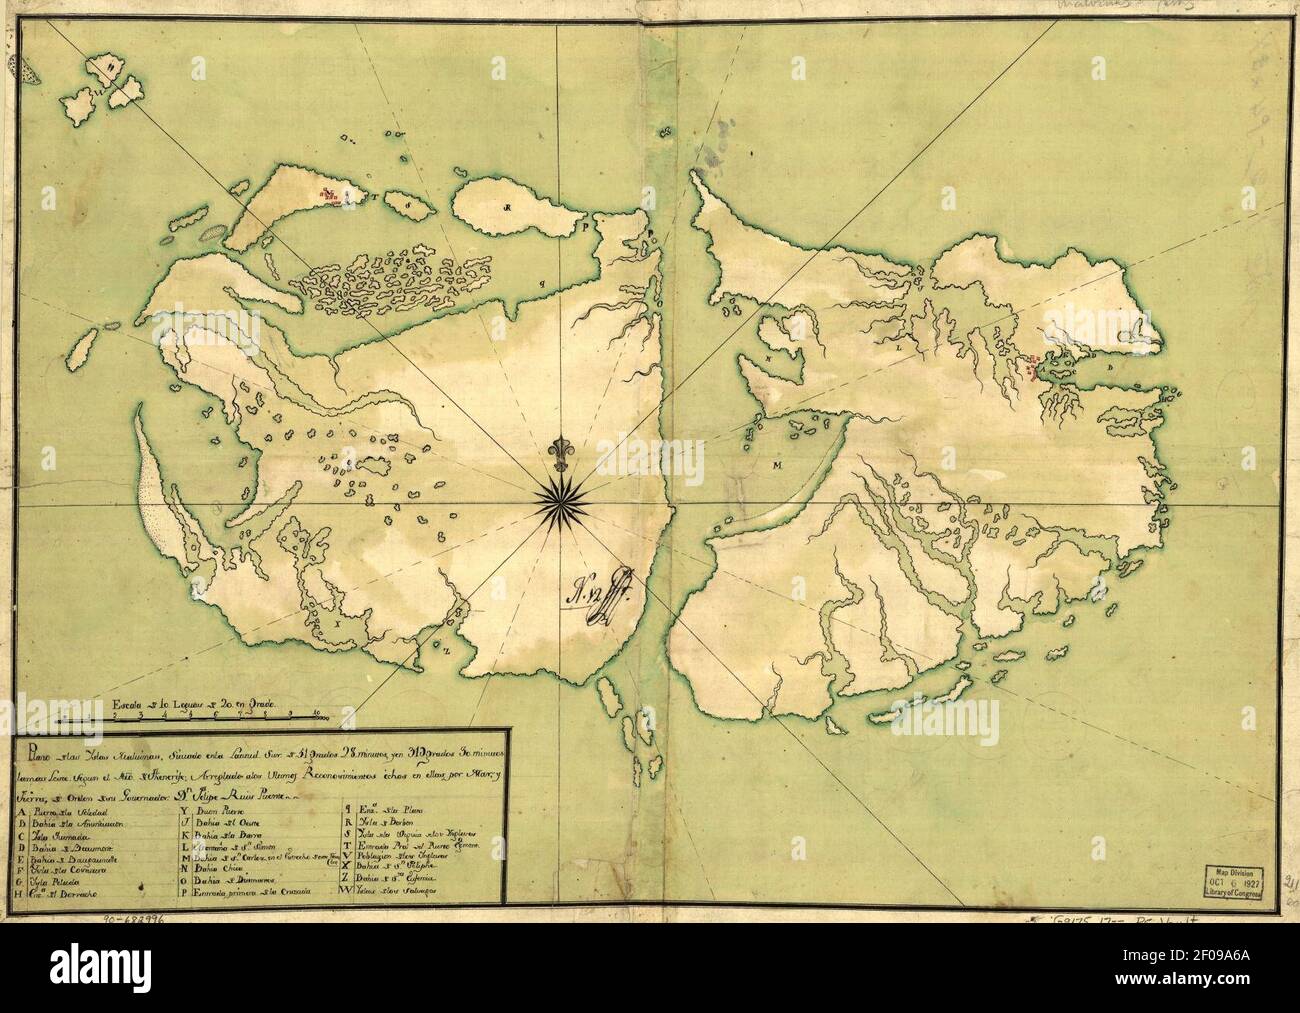 Plano de las Yslas Malvinas, situado en la latitud sur de 51 grados 28 minutos y en 319 grados 30 minutos lamas leste segun el mro. de Thenerife, arreglado a los ultimos reconosimientos echos en ellas Stock Photo